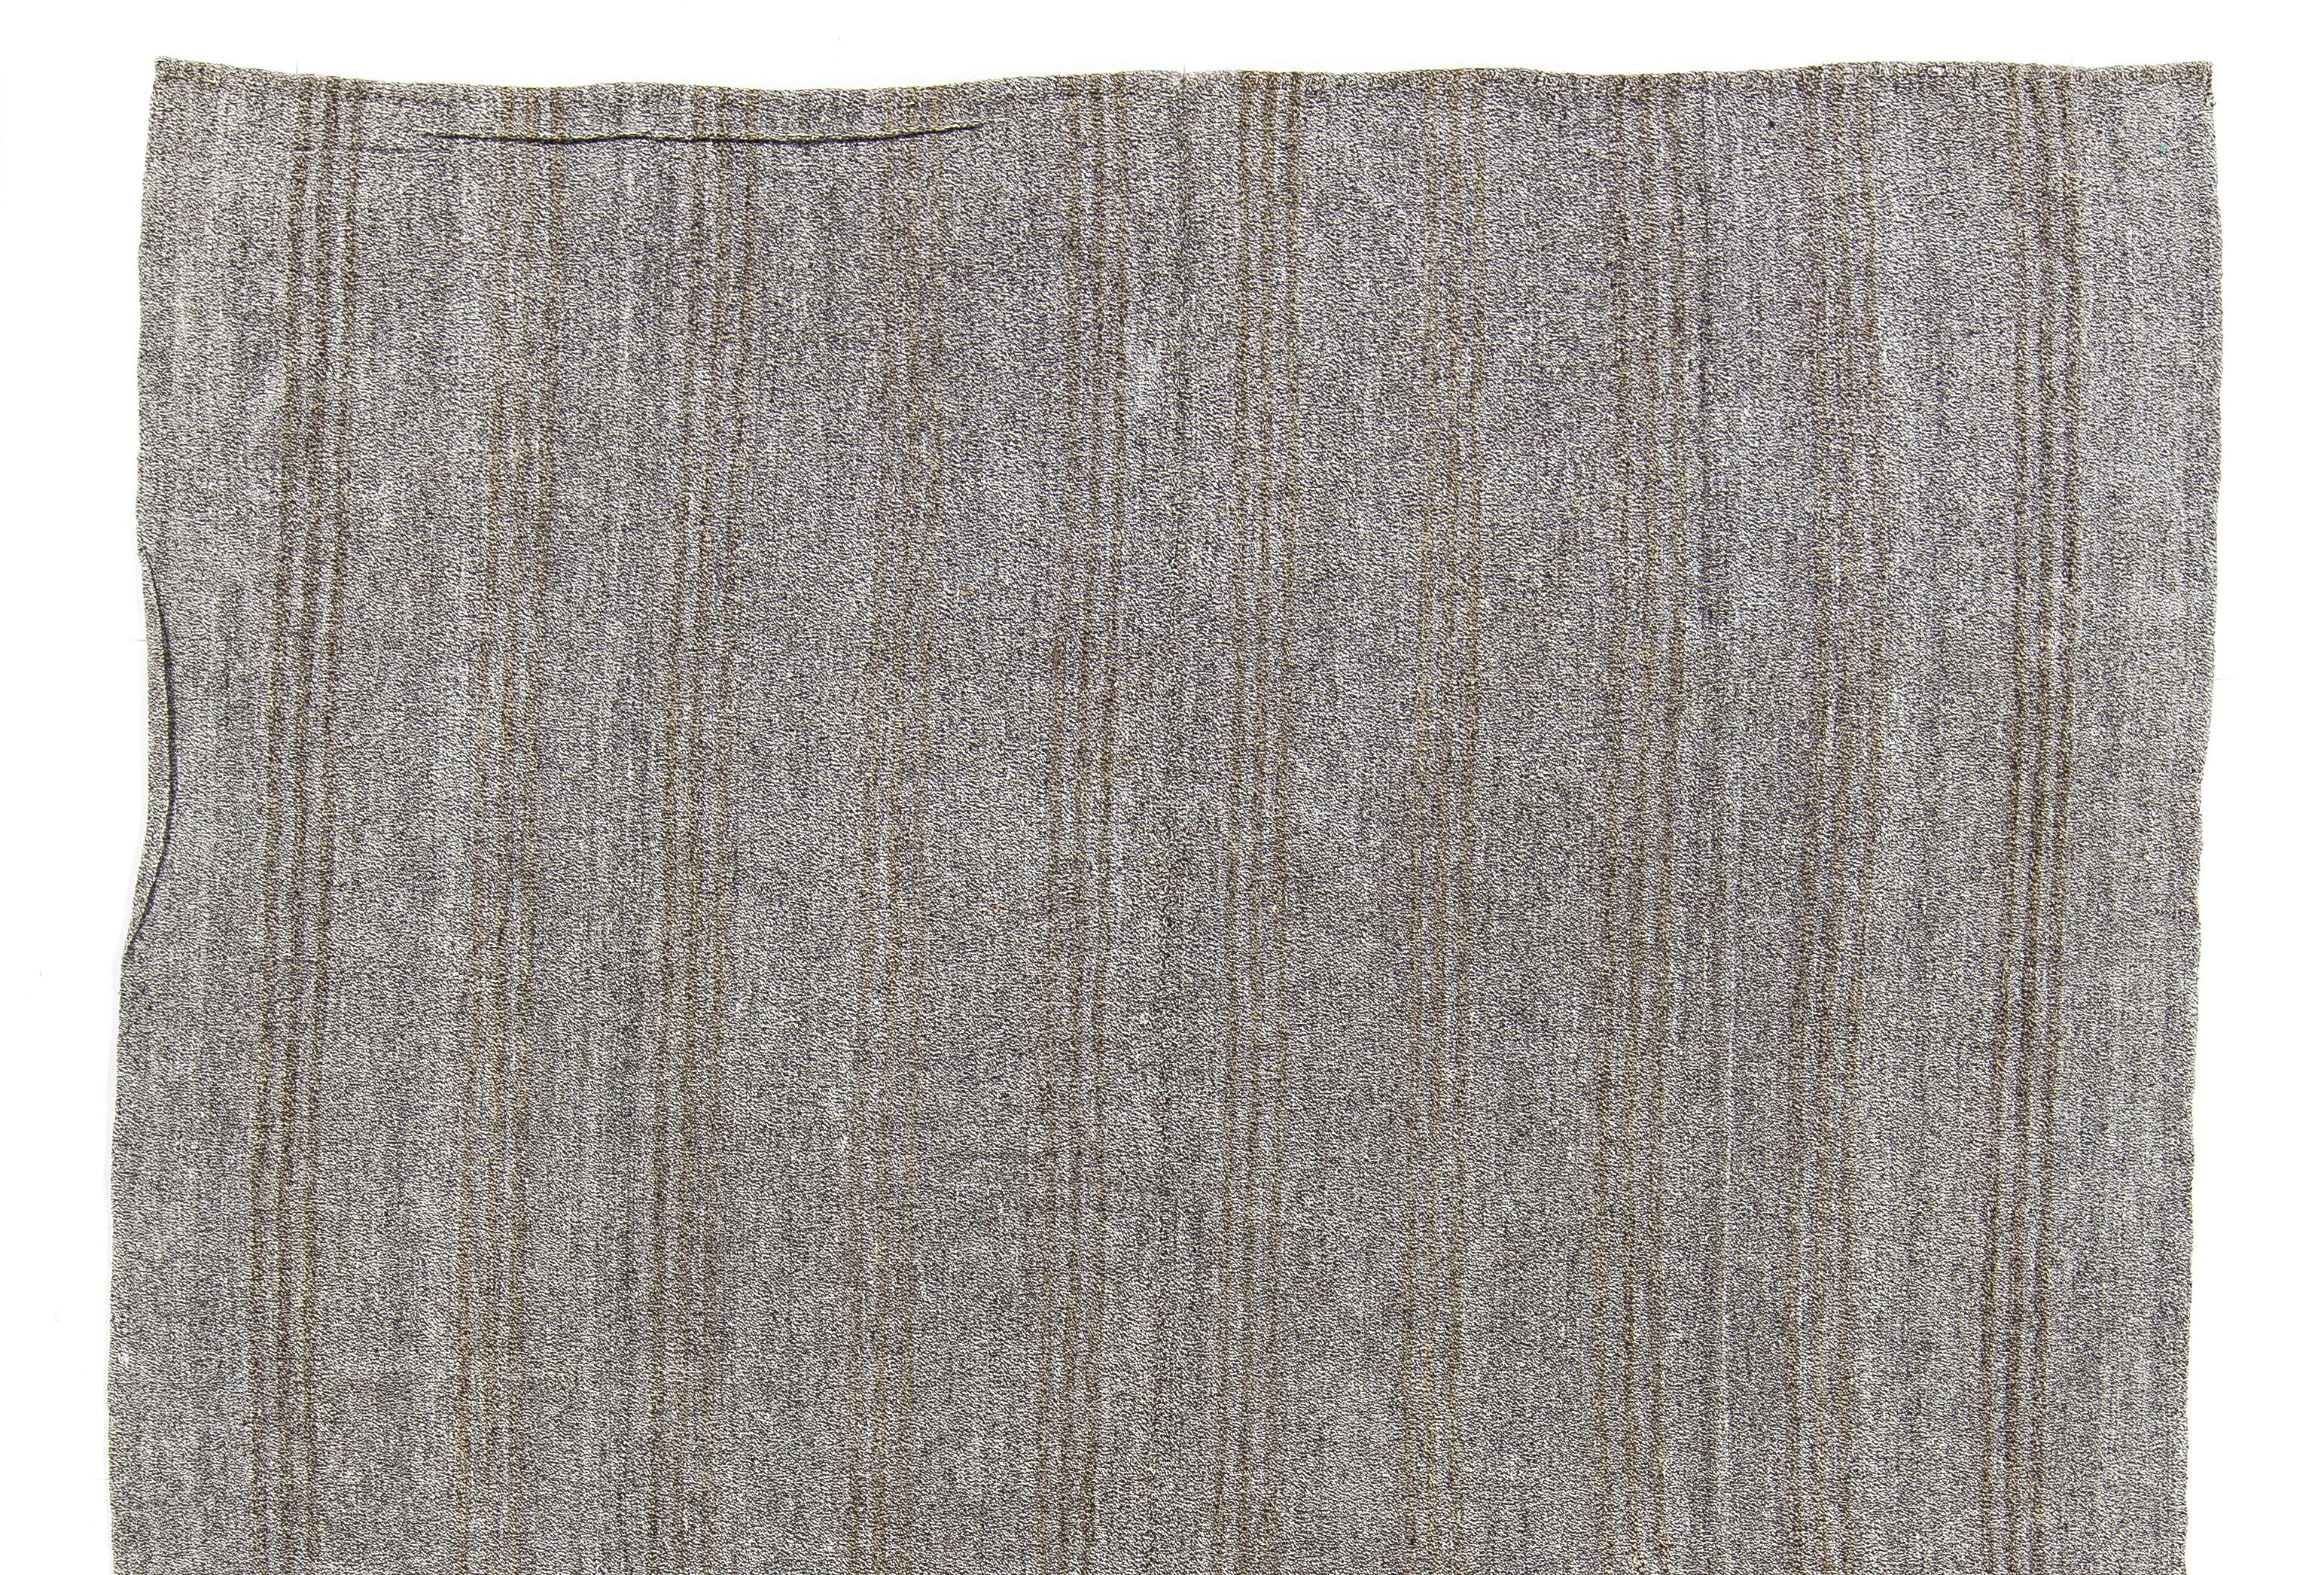 Un magnifique kilim (tissage plat) d'Anatolie orientale tissé à la main, au design simple, dans une palette neutre et apaisante de gris et de brun verdâtre. En très bon état, robuste et propre, finement tissé, adapté au trafic quotidien.